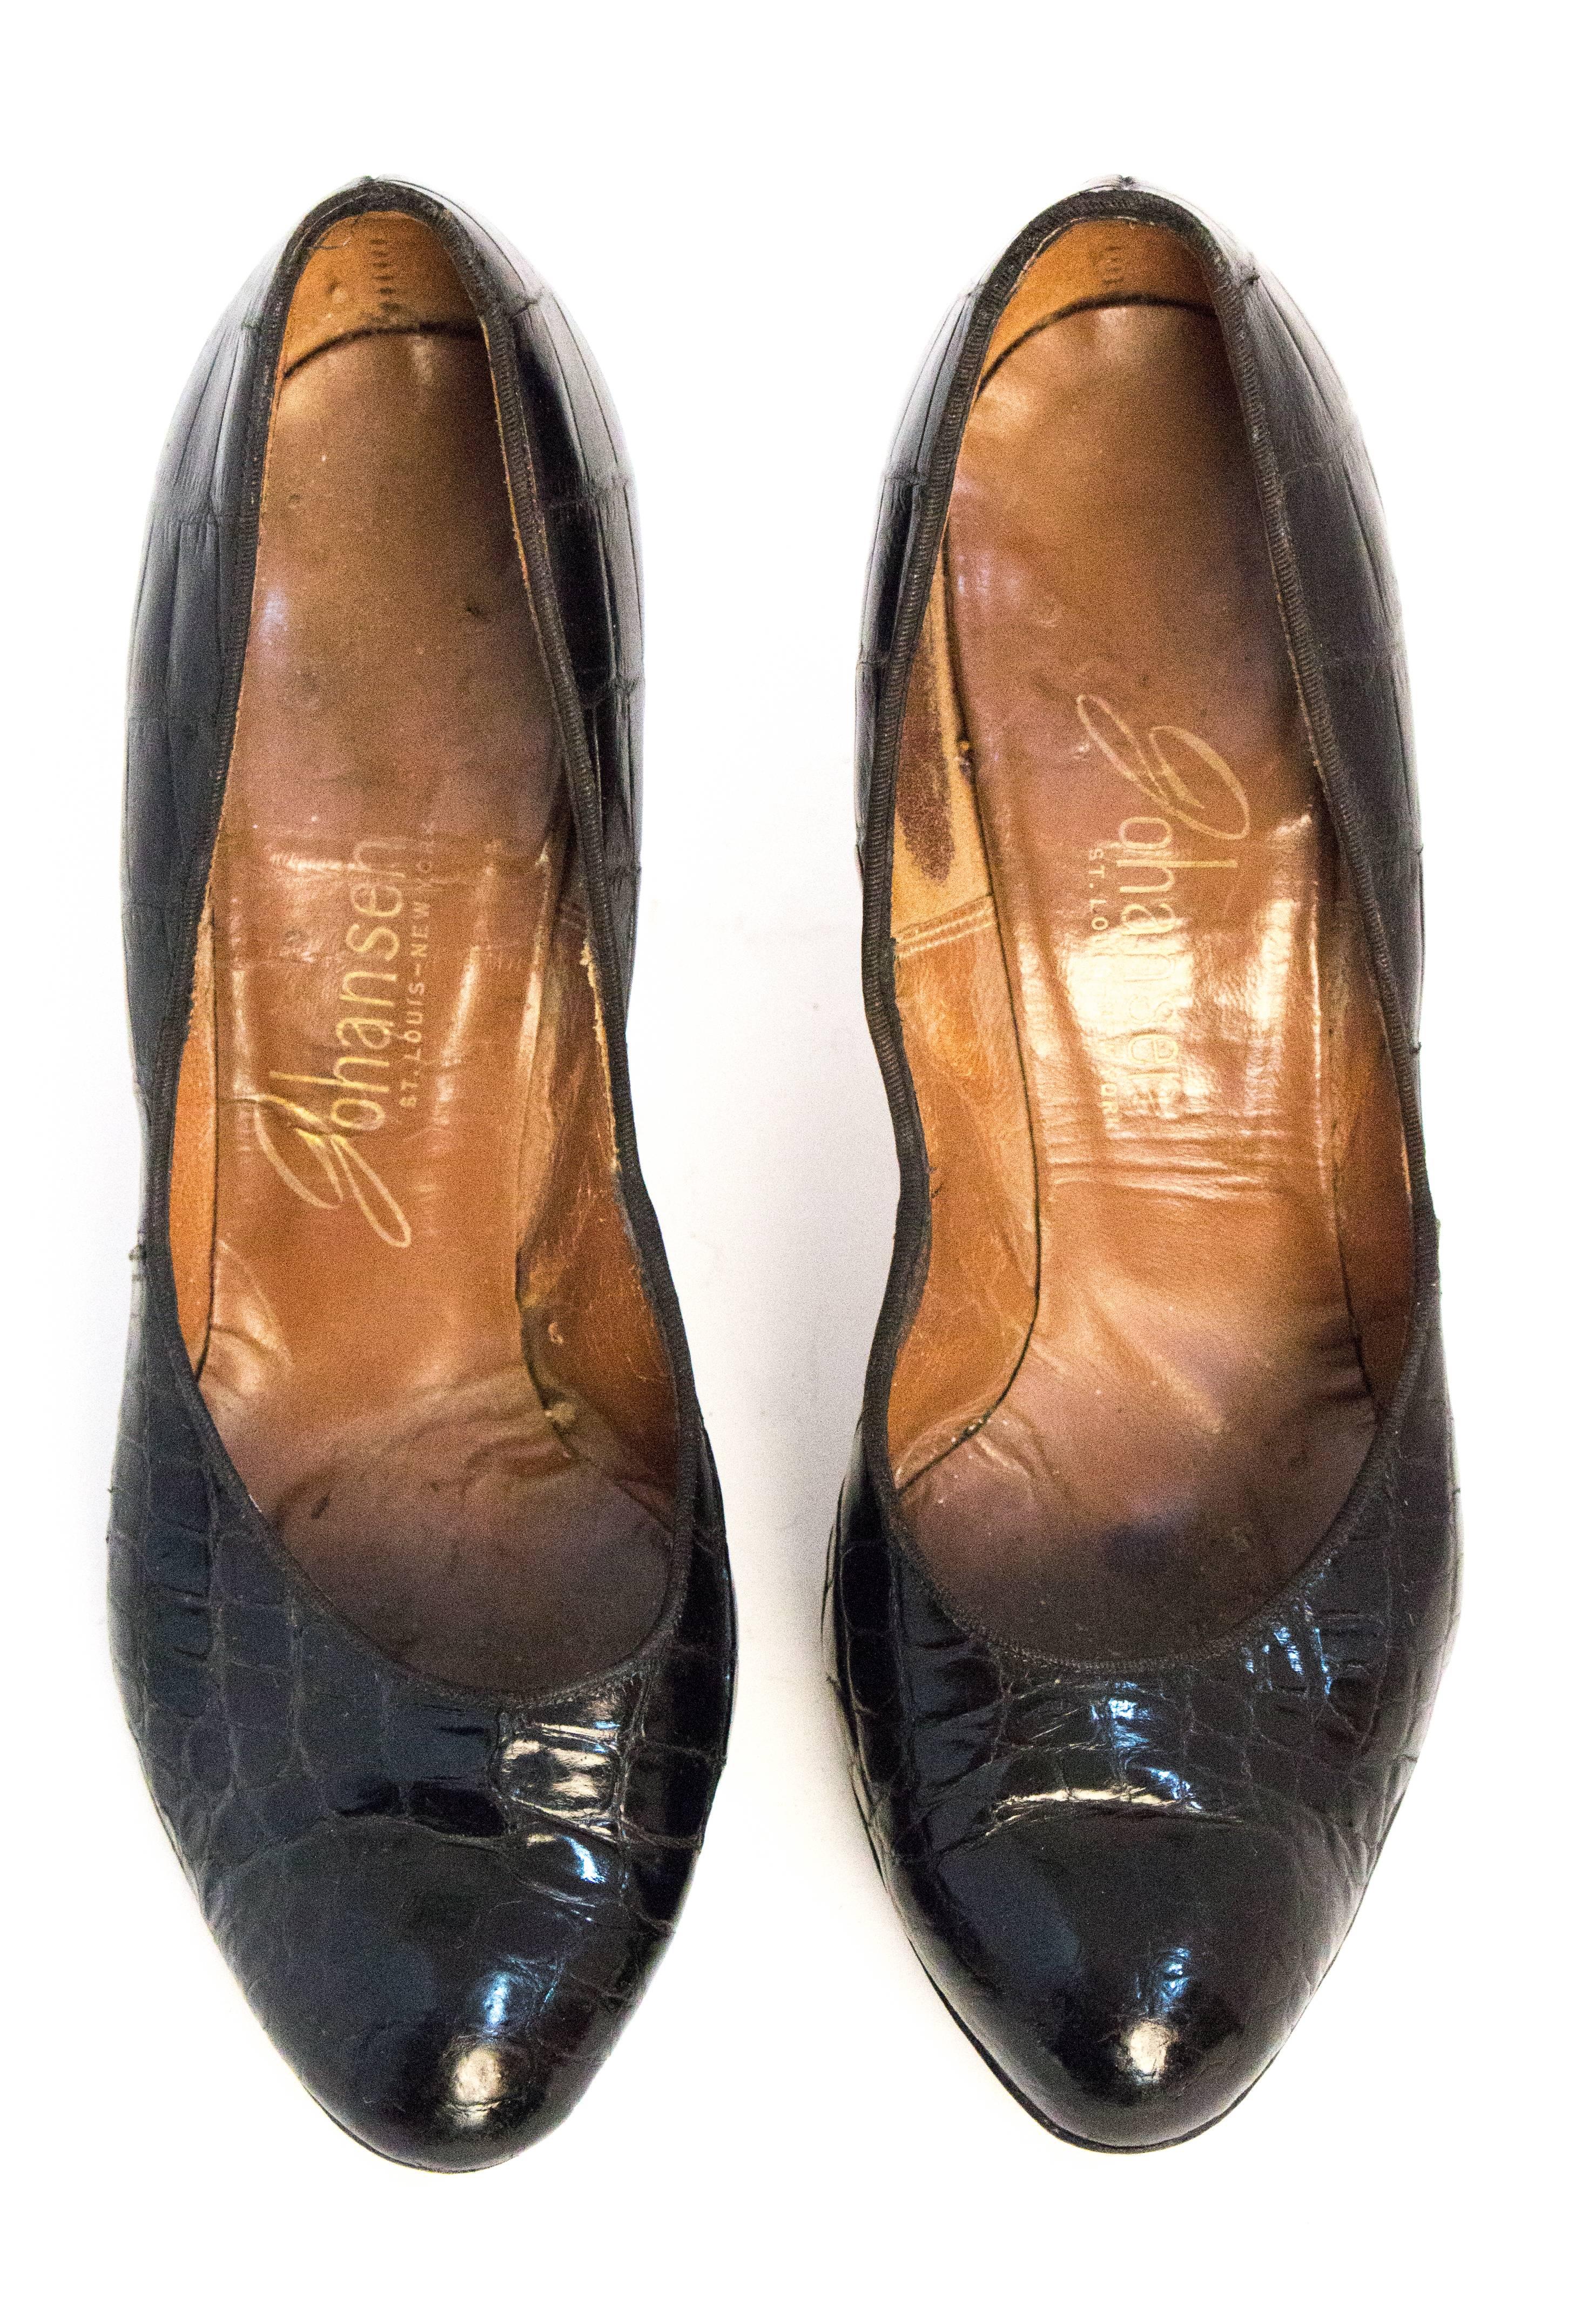 Noir Chaussures à talons hauts en alligator noir des années 50 